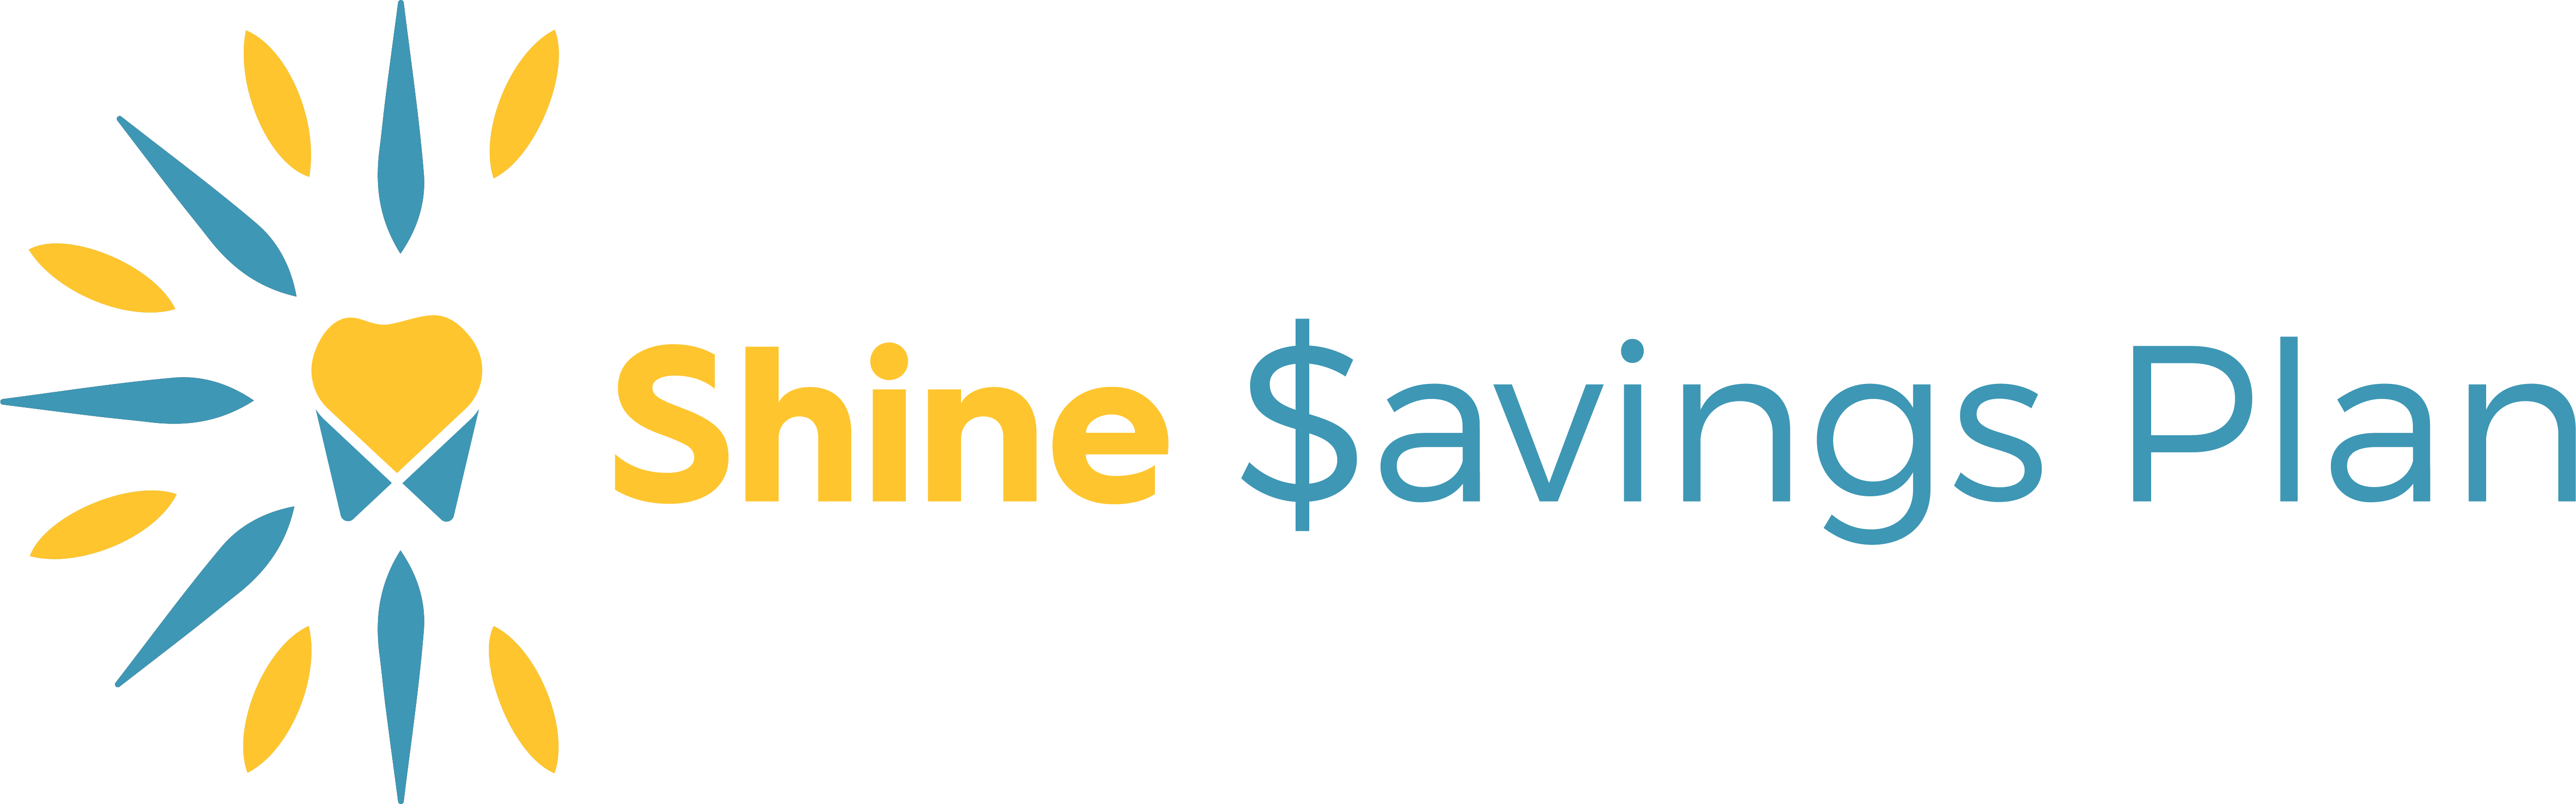 shine savings plan logo